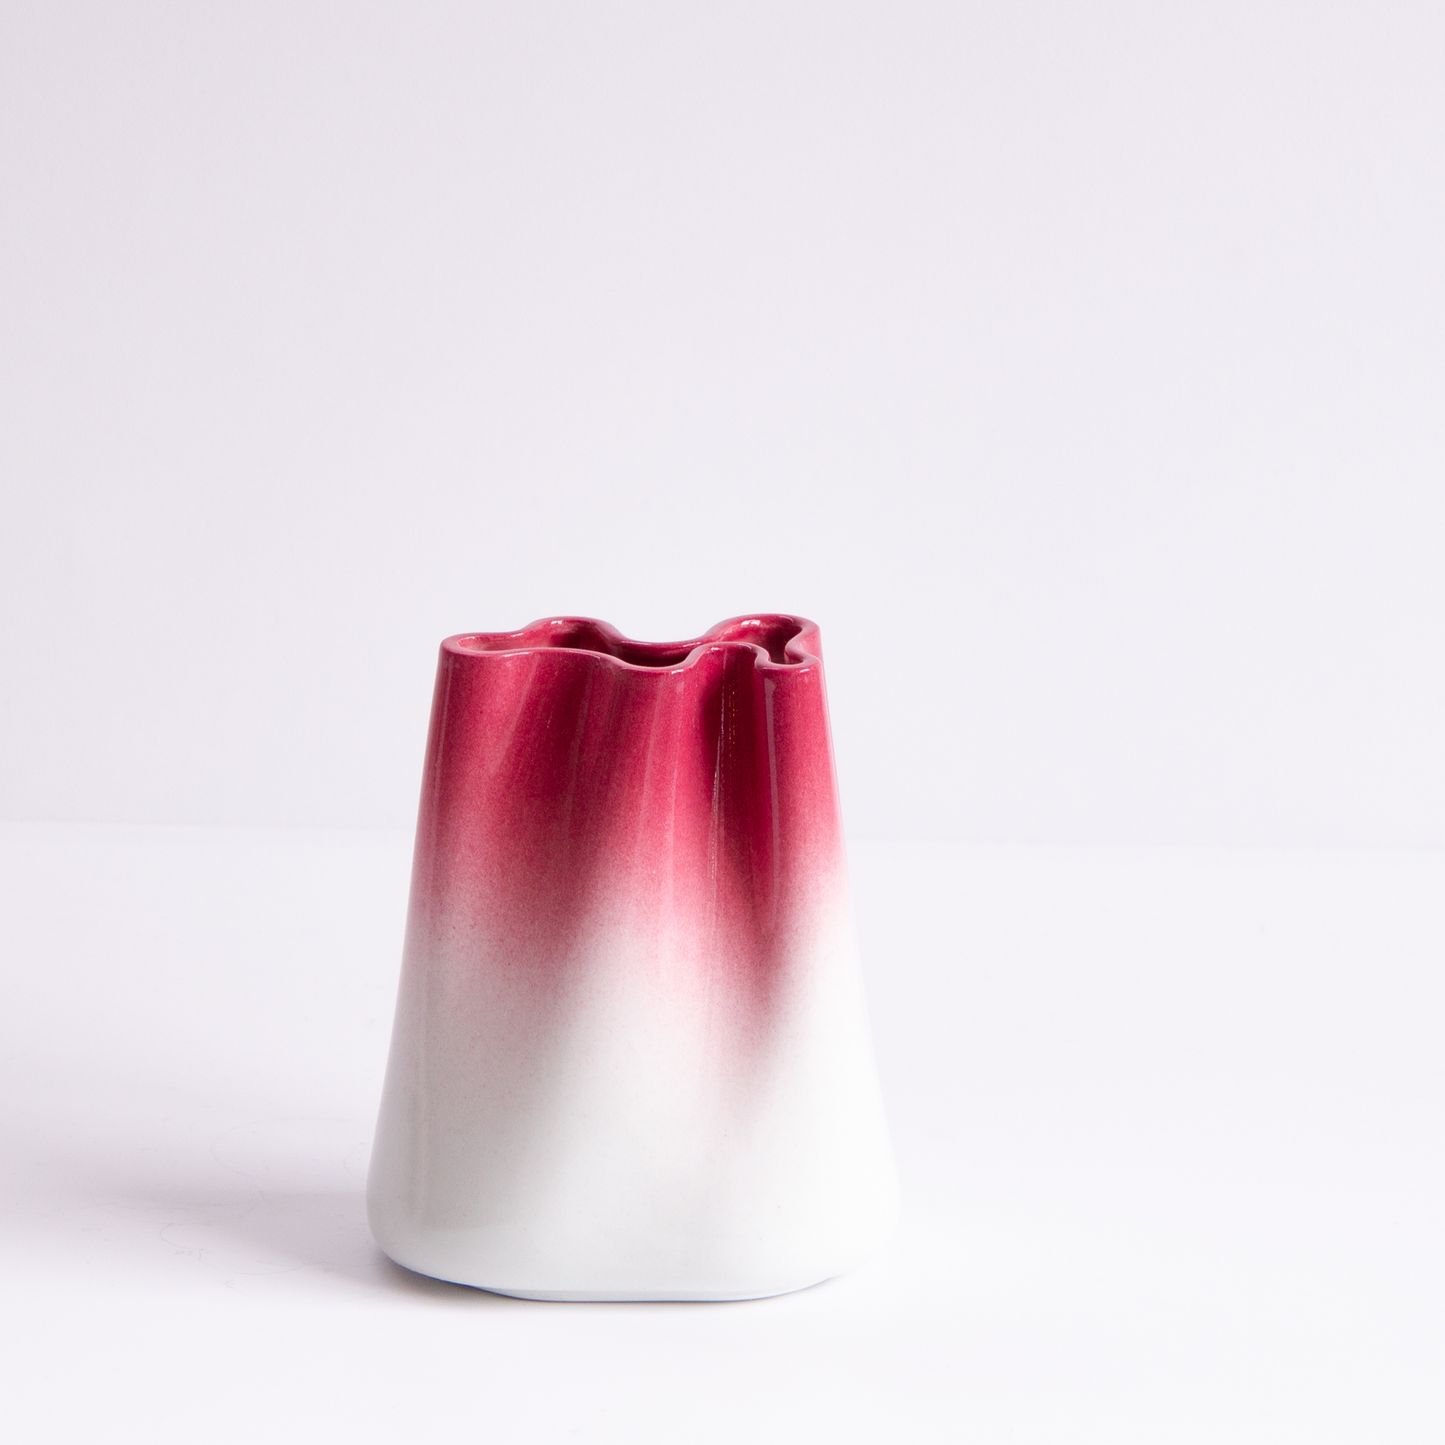 [JUMONY] High Gloss Porcelain Vase - Small in Santorini Sunset